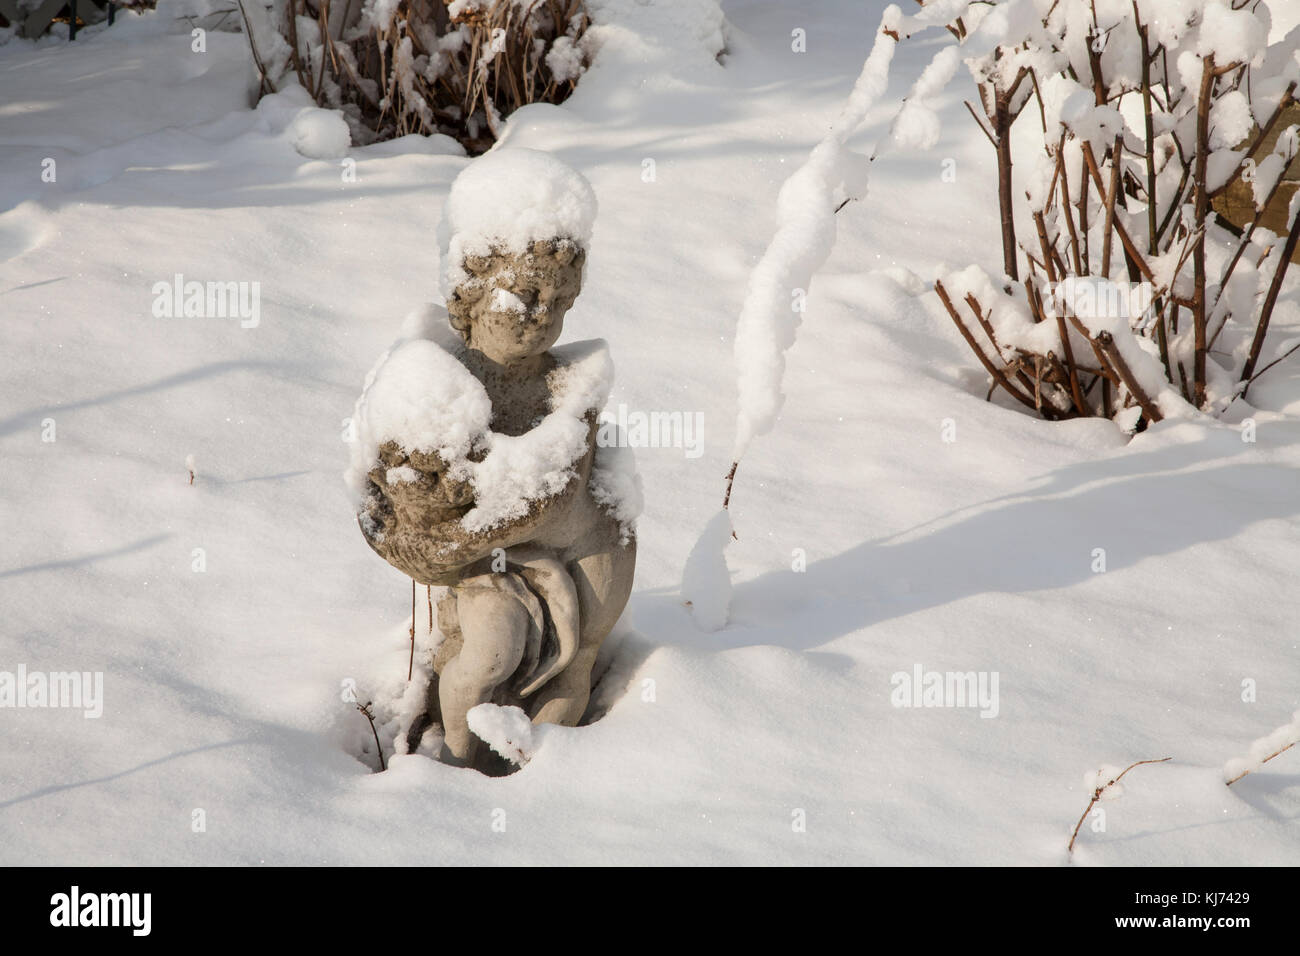 Garden Cherub Statuary im Winterschnee Humor, Monroe Township, New Jersey, USA, Vereinigte Staaten, NJ Schnee Fee Garten Stockfoto